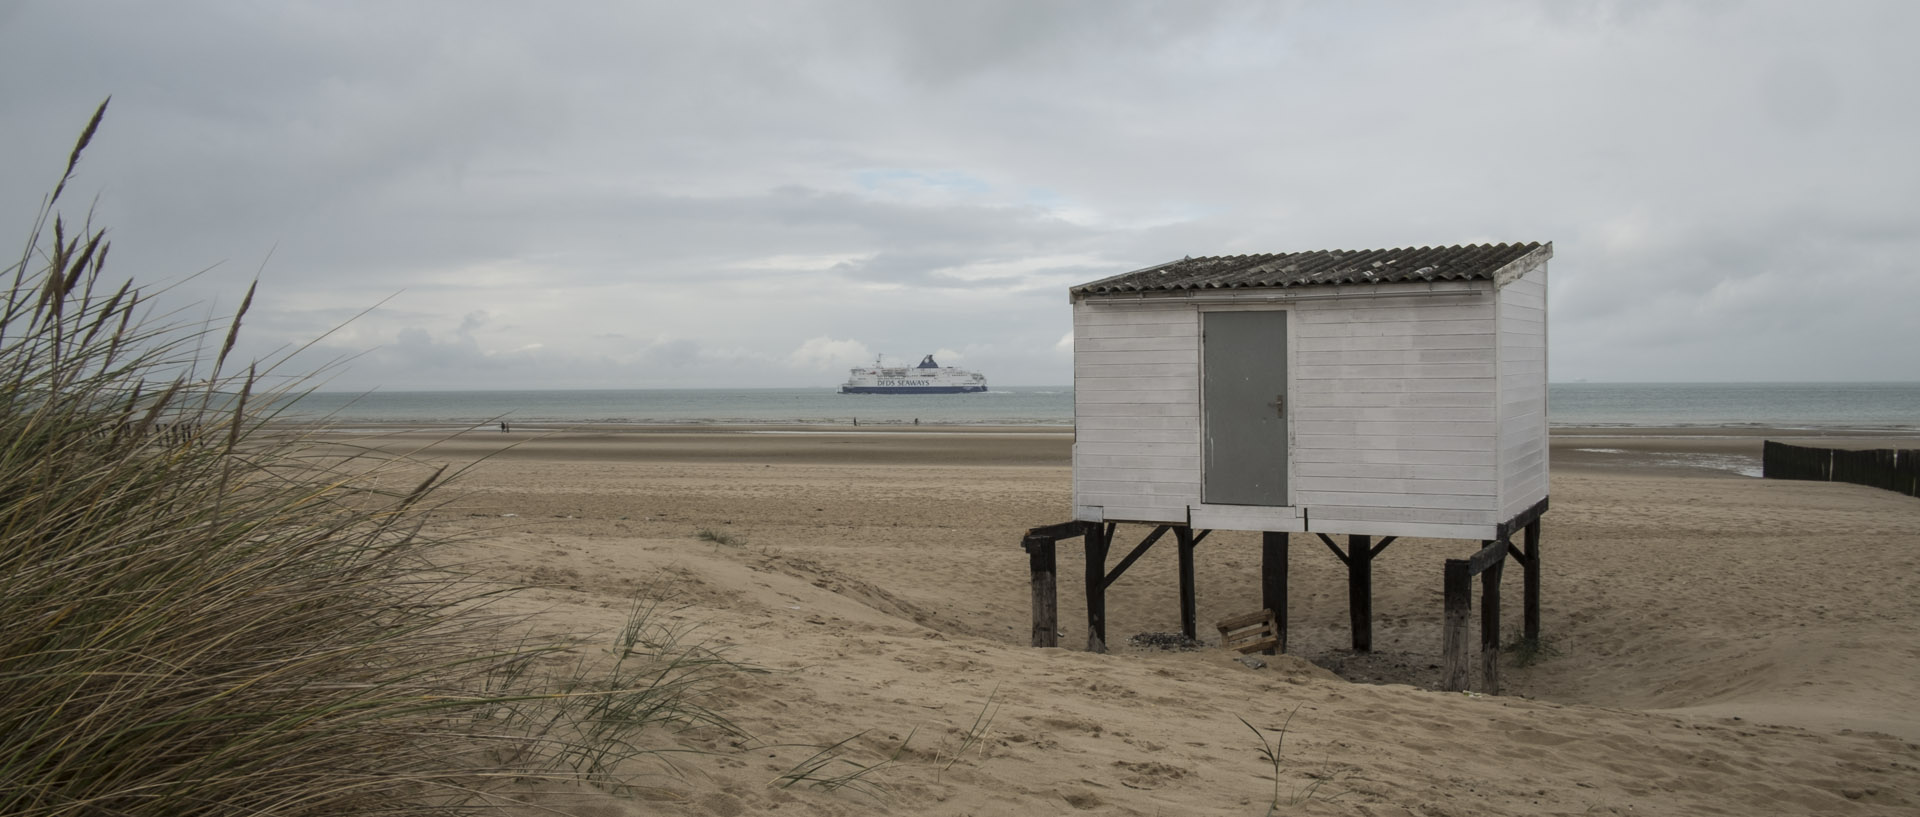 Mercredi 4 novembre 2015, 13:55, plage de Calais